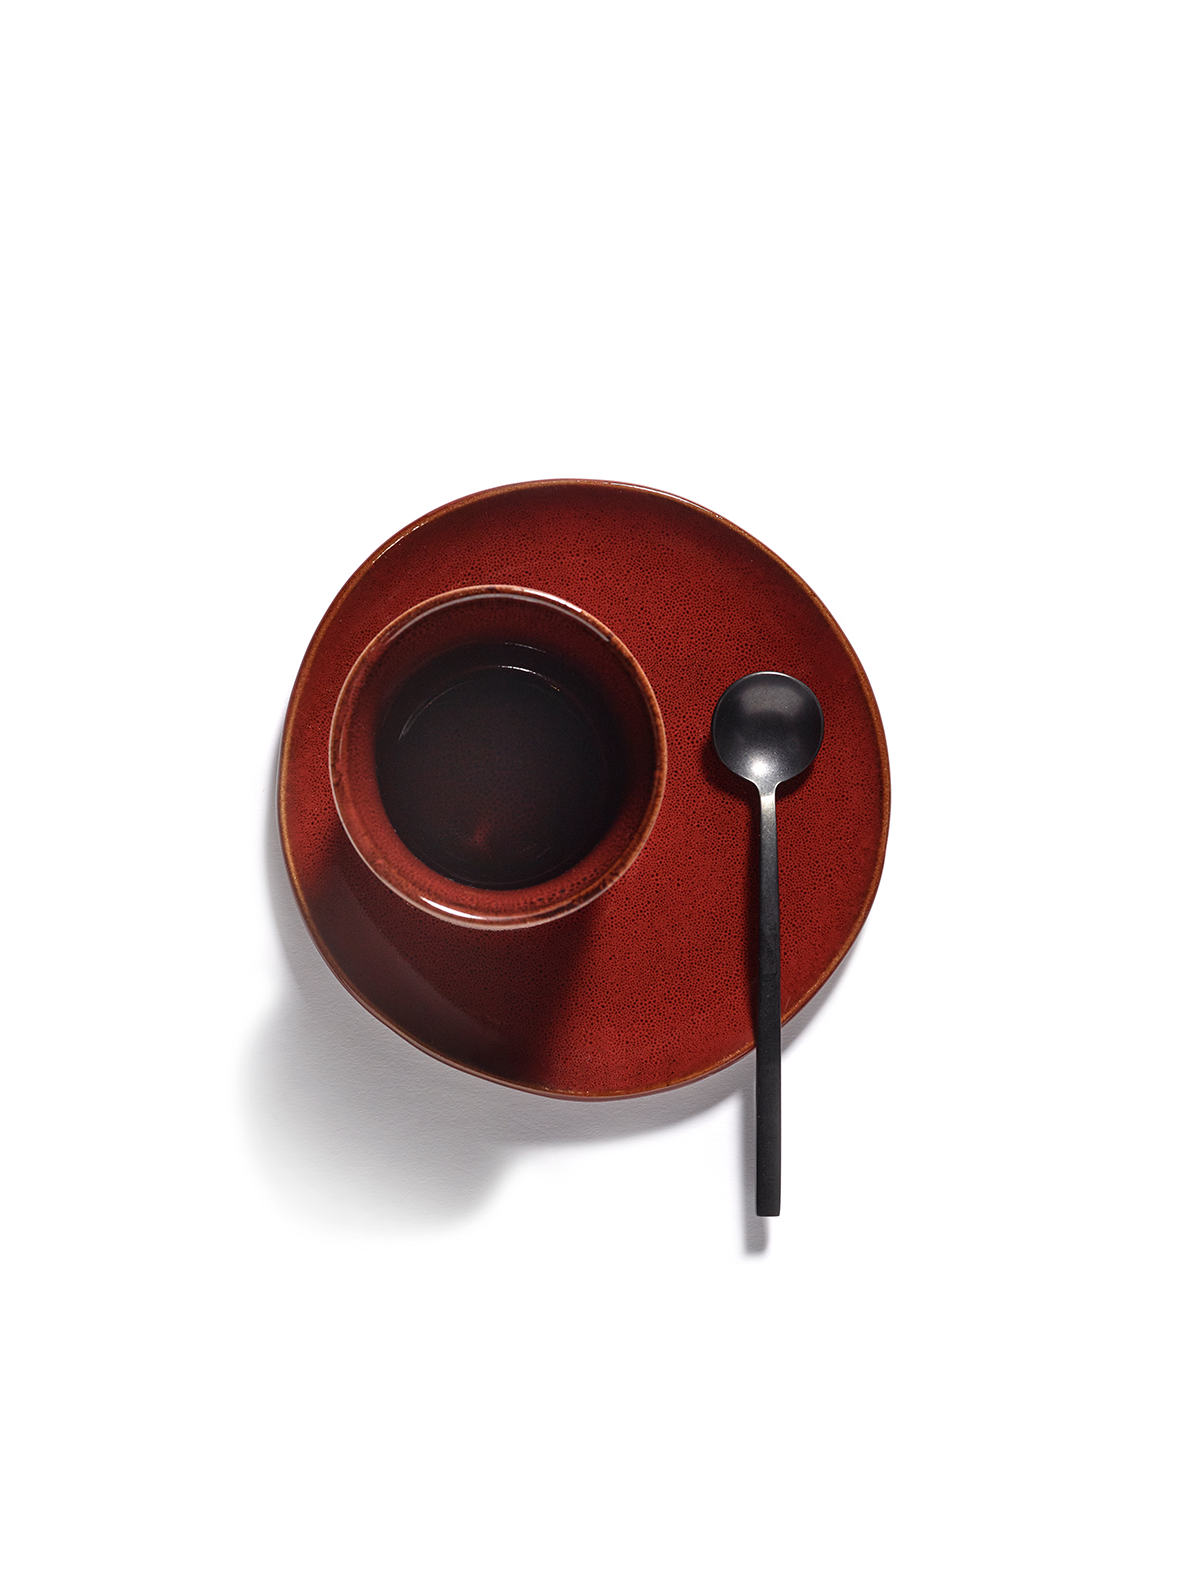 Coffee cup - La Mère by Marie Michielssen - Venetian red